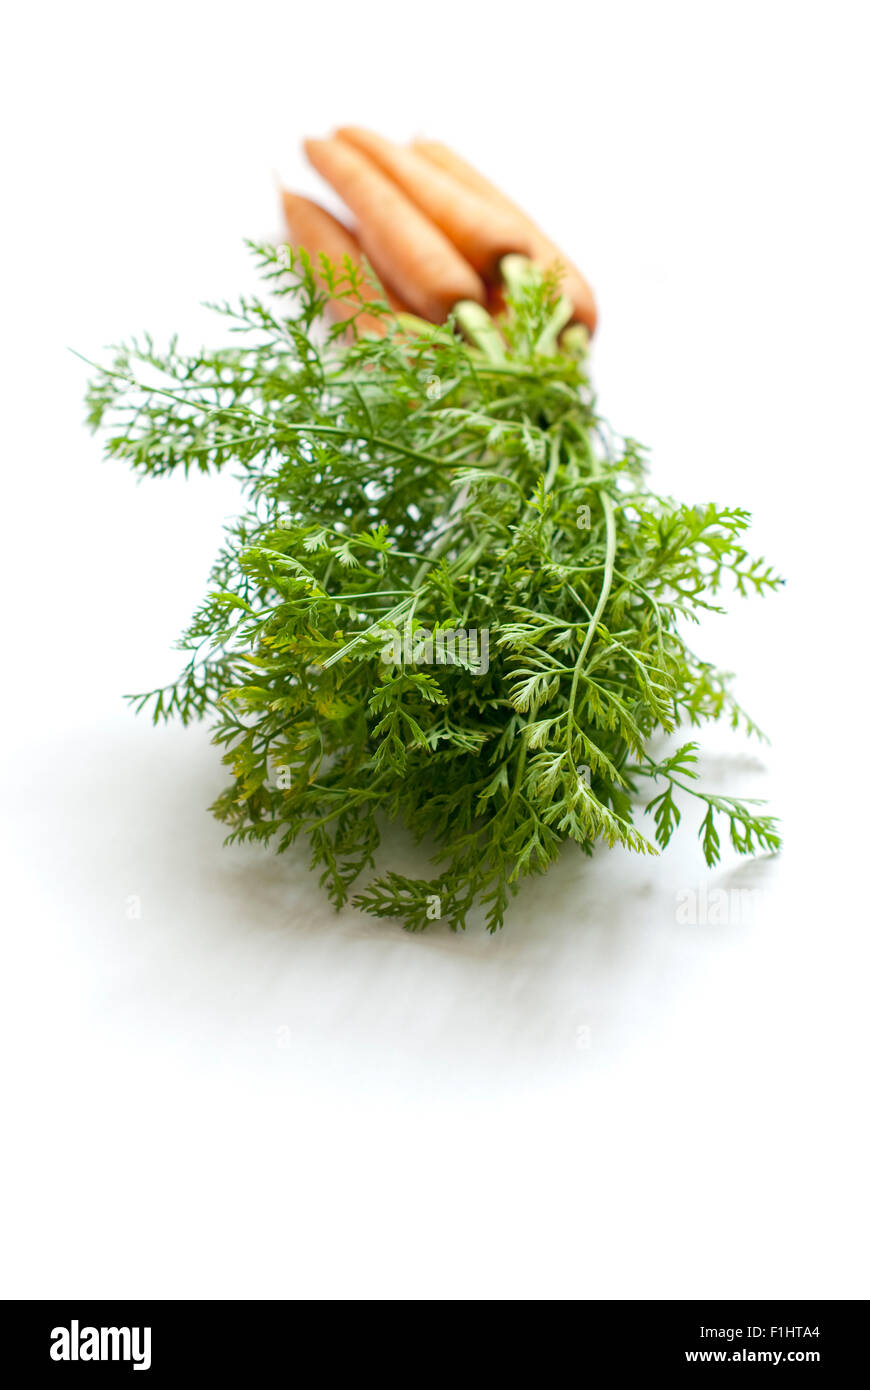 Still Life food immagine di carote organico con cime di verde - Ortaggi o legumi Foto Stock